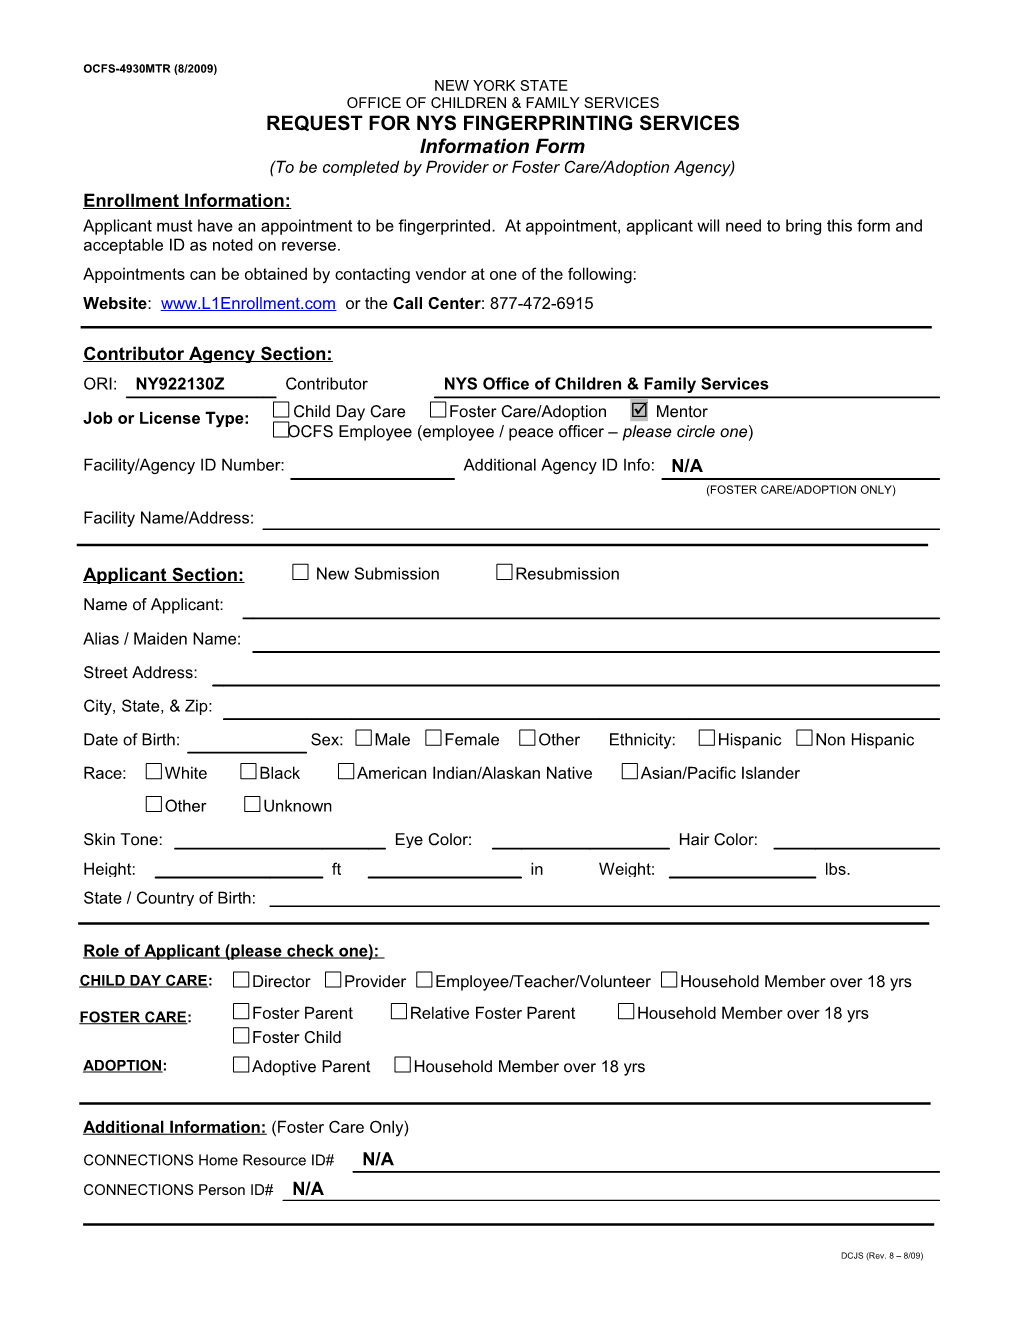 Application Form for Livescan Fingerprinting